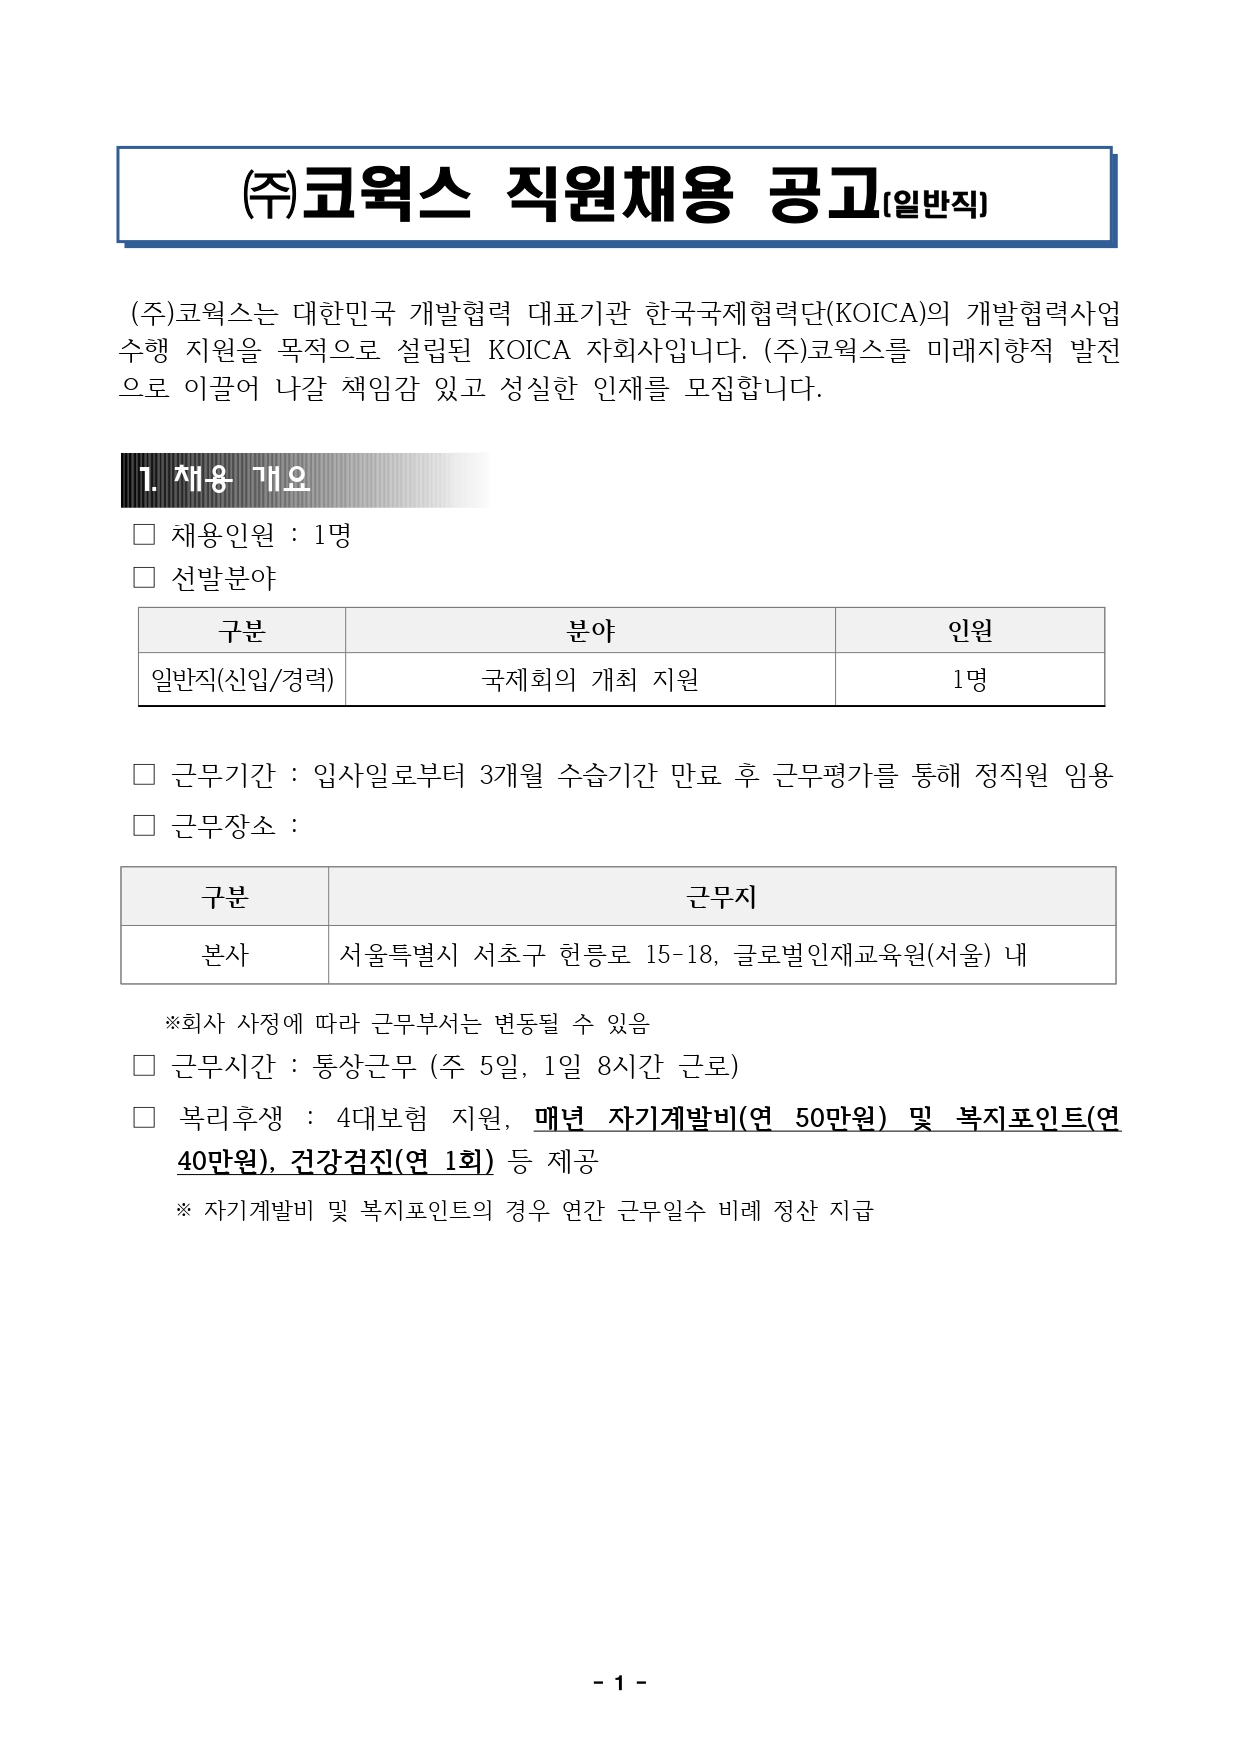 붙임4. 직원채용 공고문(서울,컨벤션)_page-0001.jpg